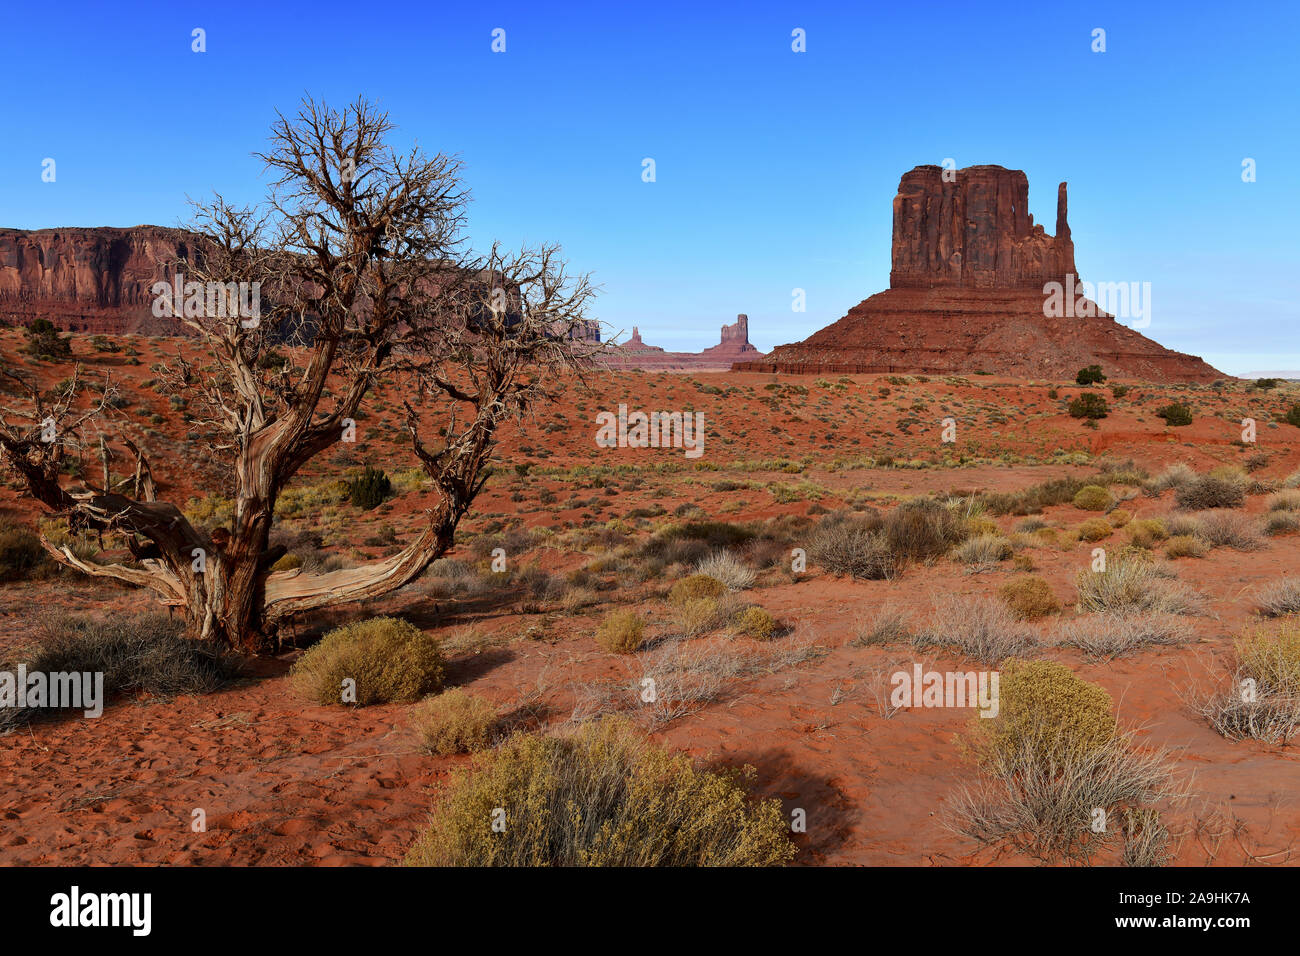 Il paesaggio del deserto della Monument Valley Navajo Tribal Park nel sud-ovest USA in Arizona e Utah, America Foto Stock